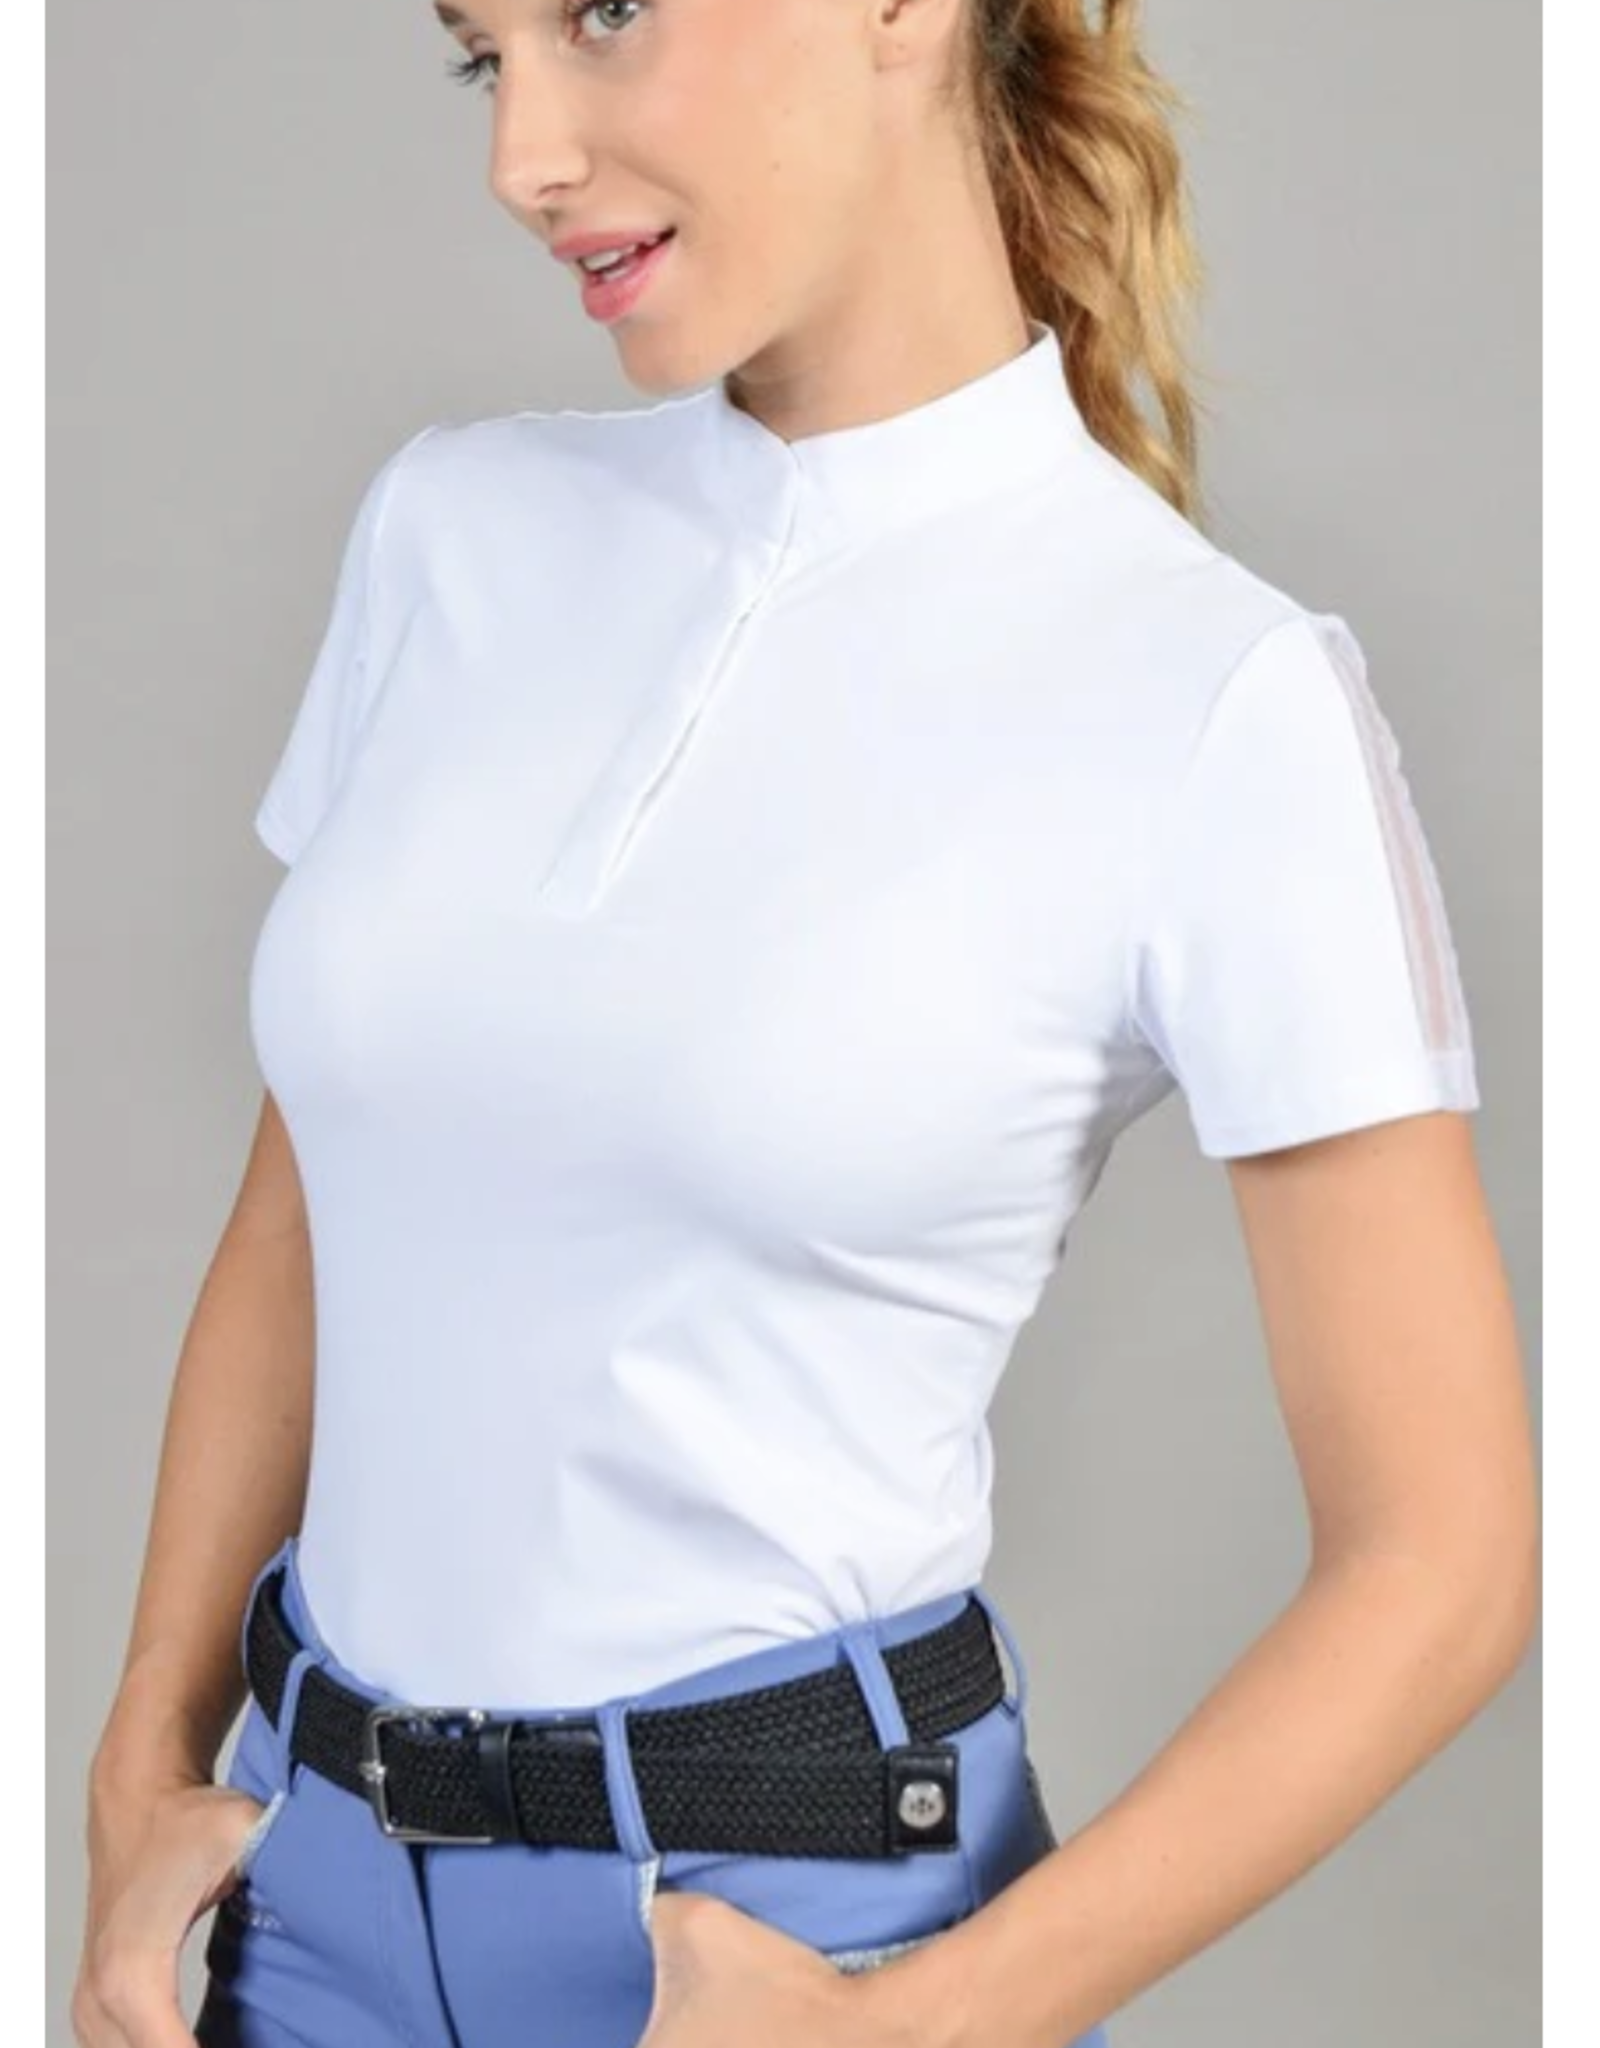 Harcour Harcour Ladies' Prystie Short Sleeve Shirt